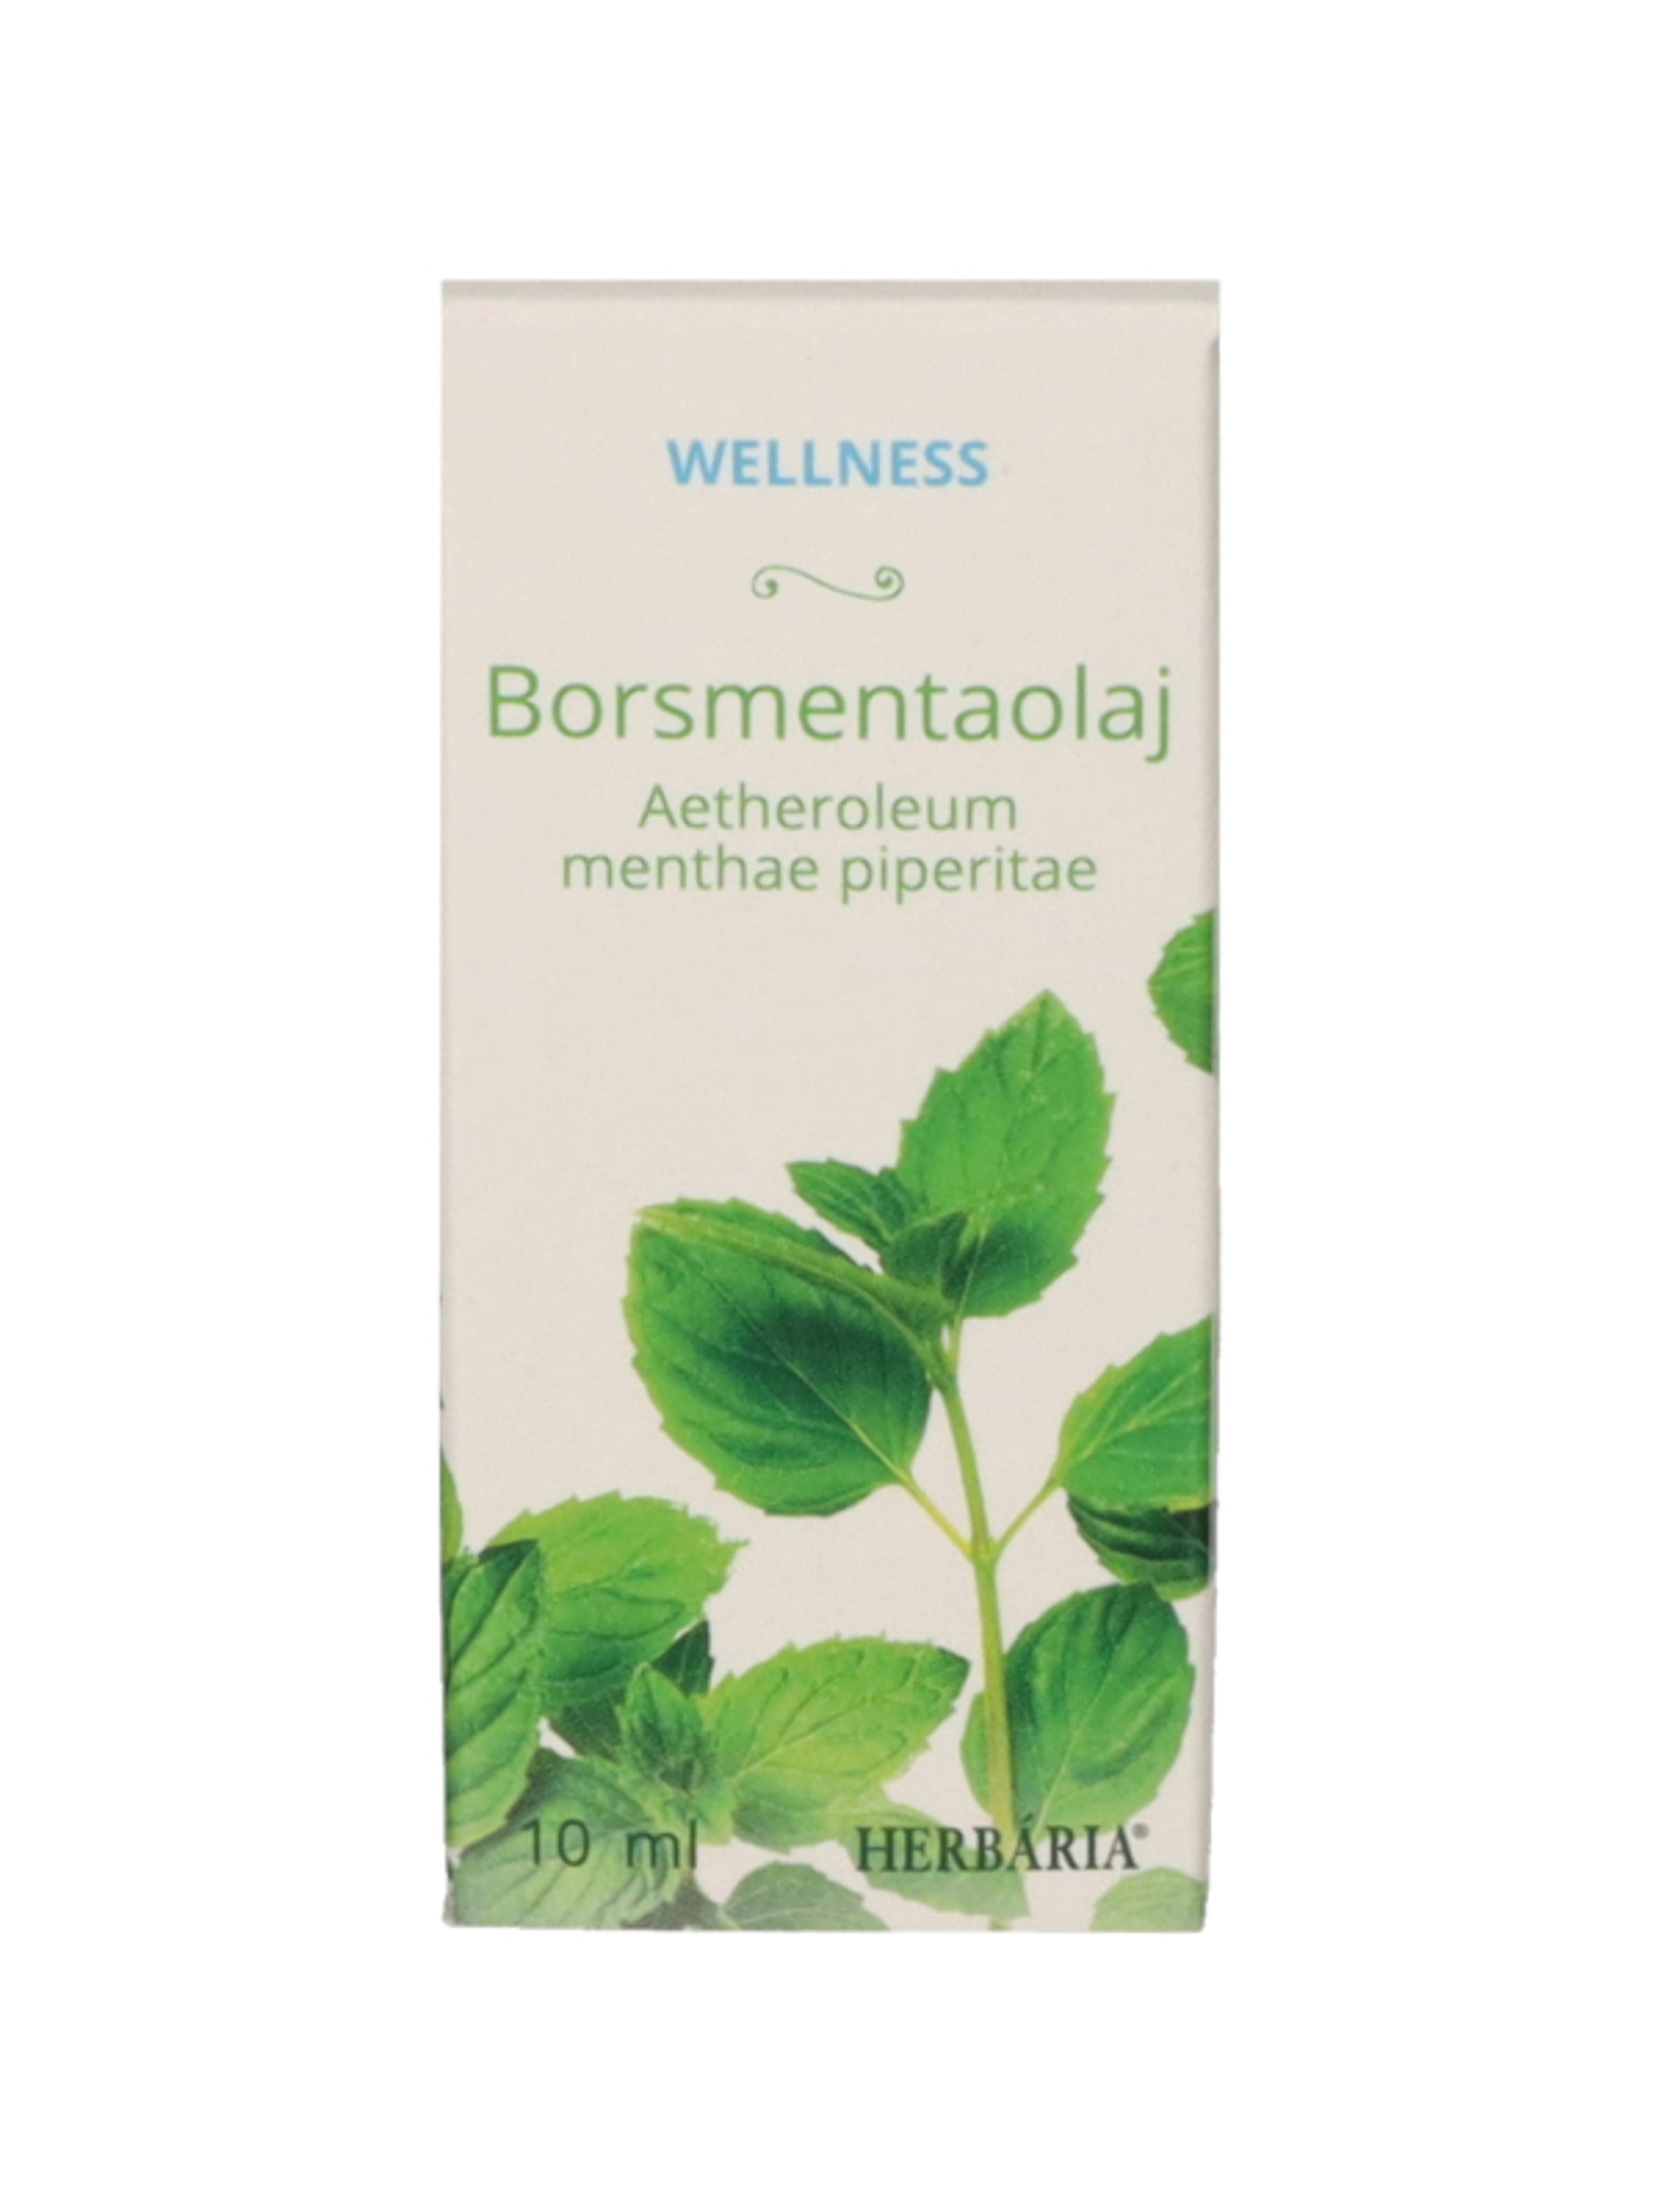 Herbaria Wellness borsmentaolaj - 10 ml-1